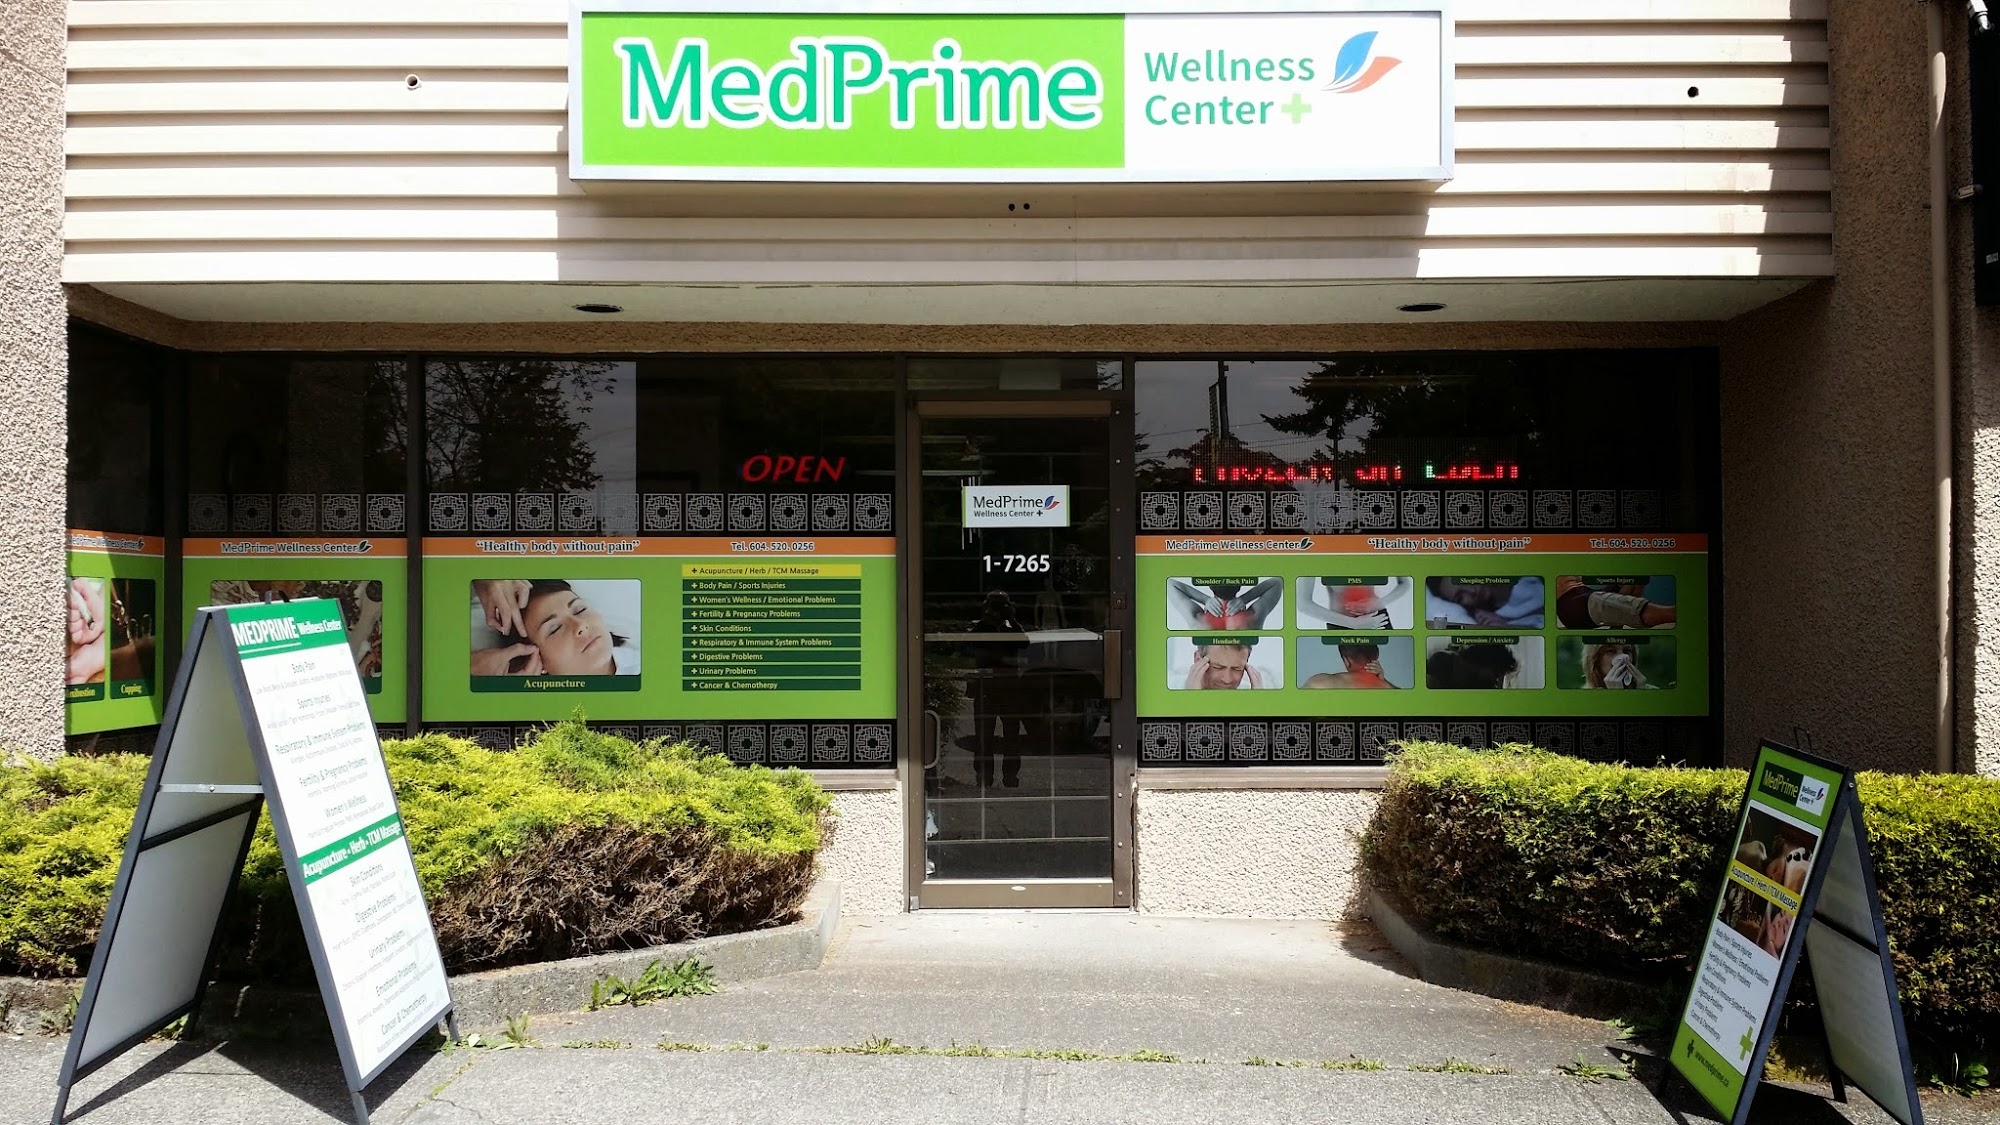 MedPrime Wellness Center